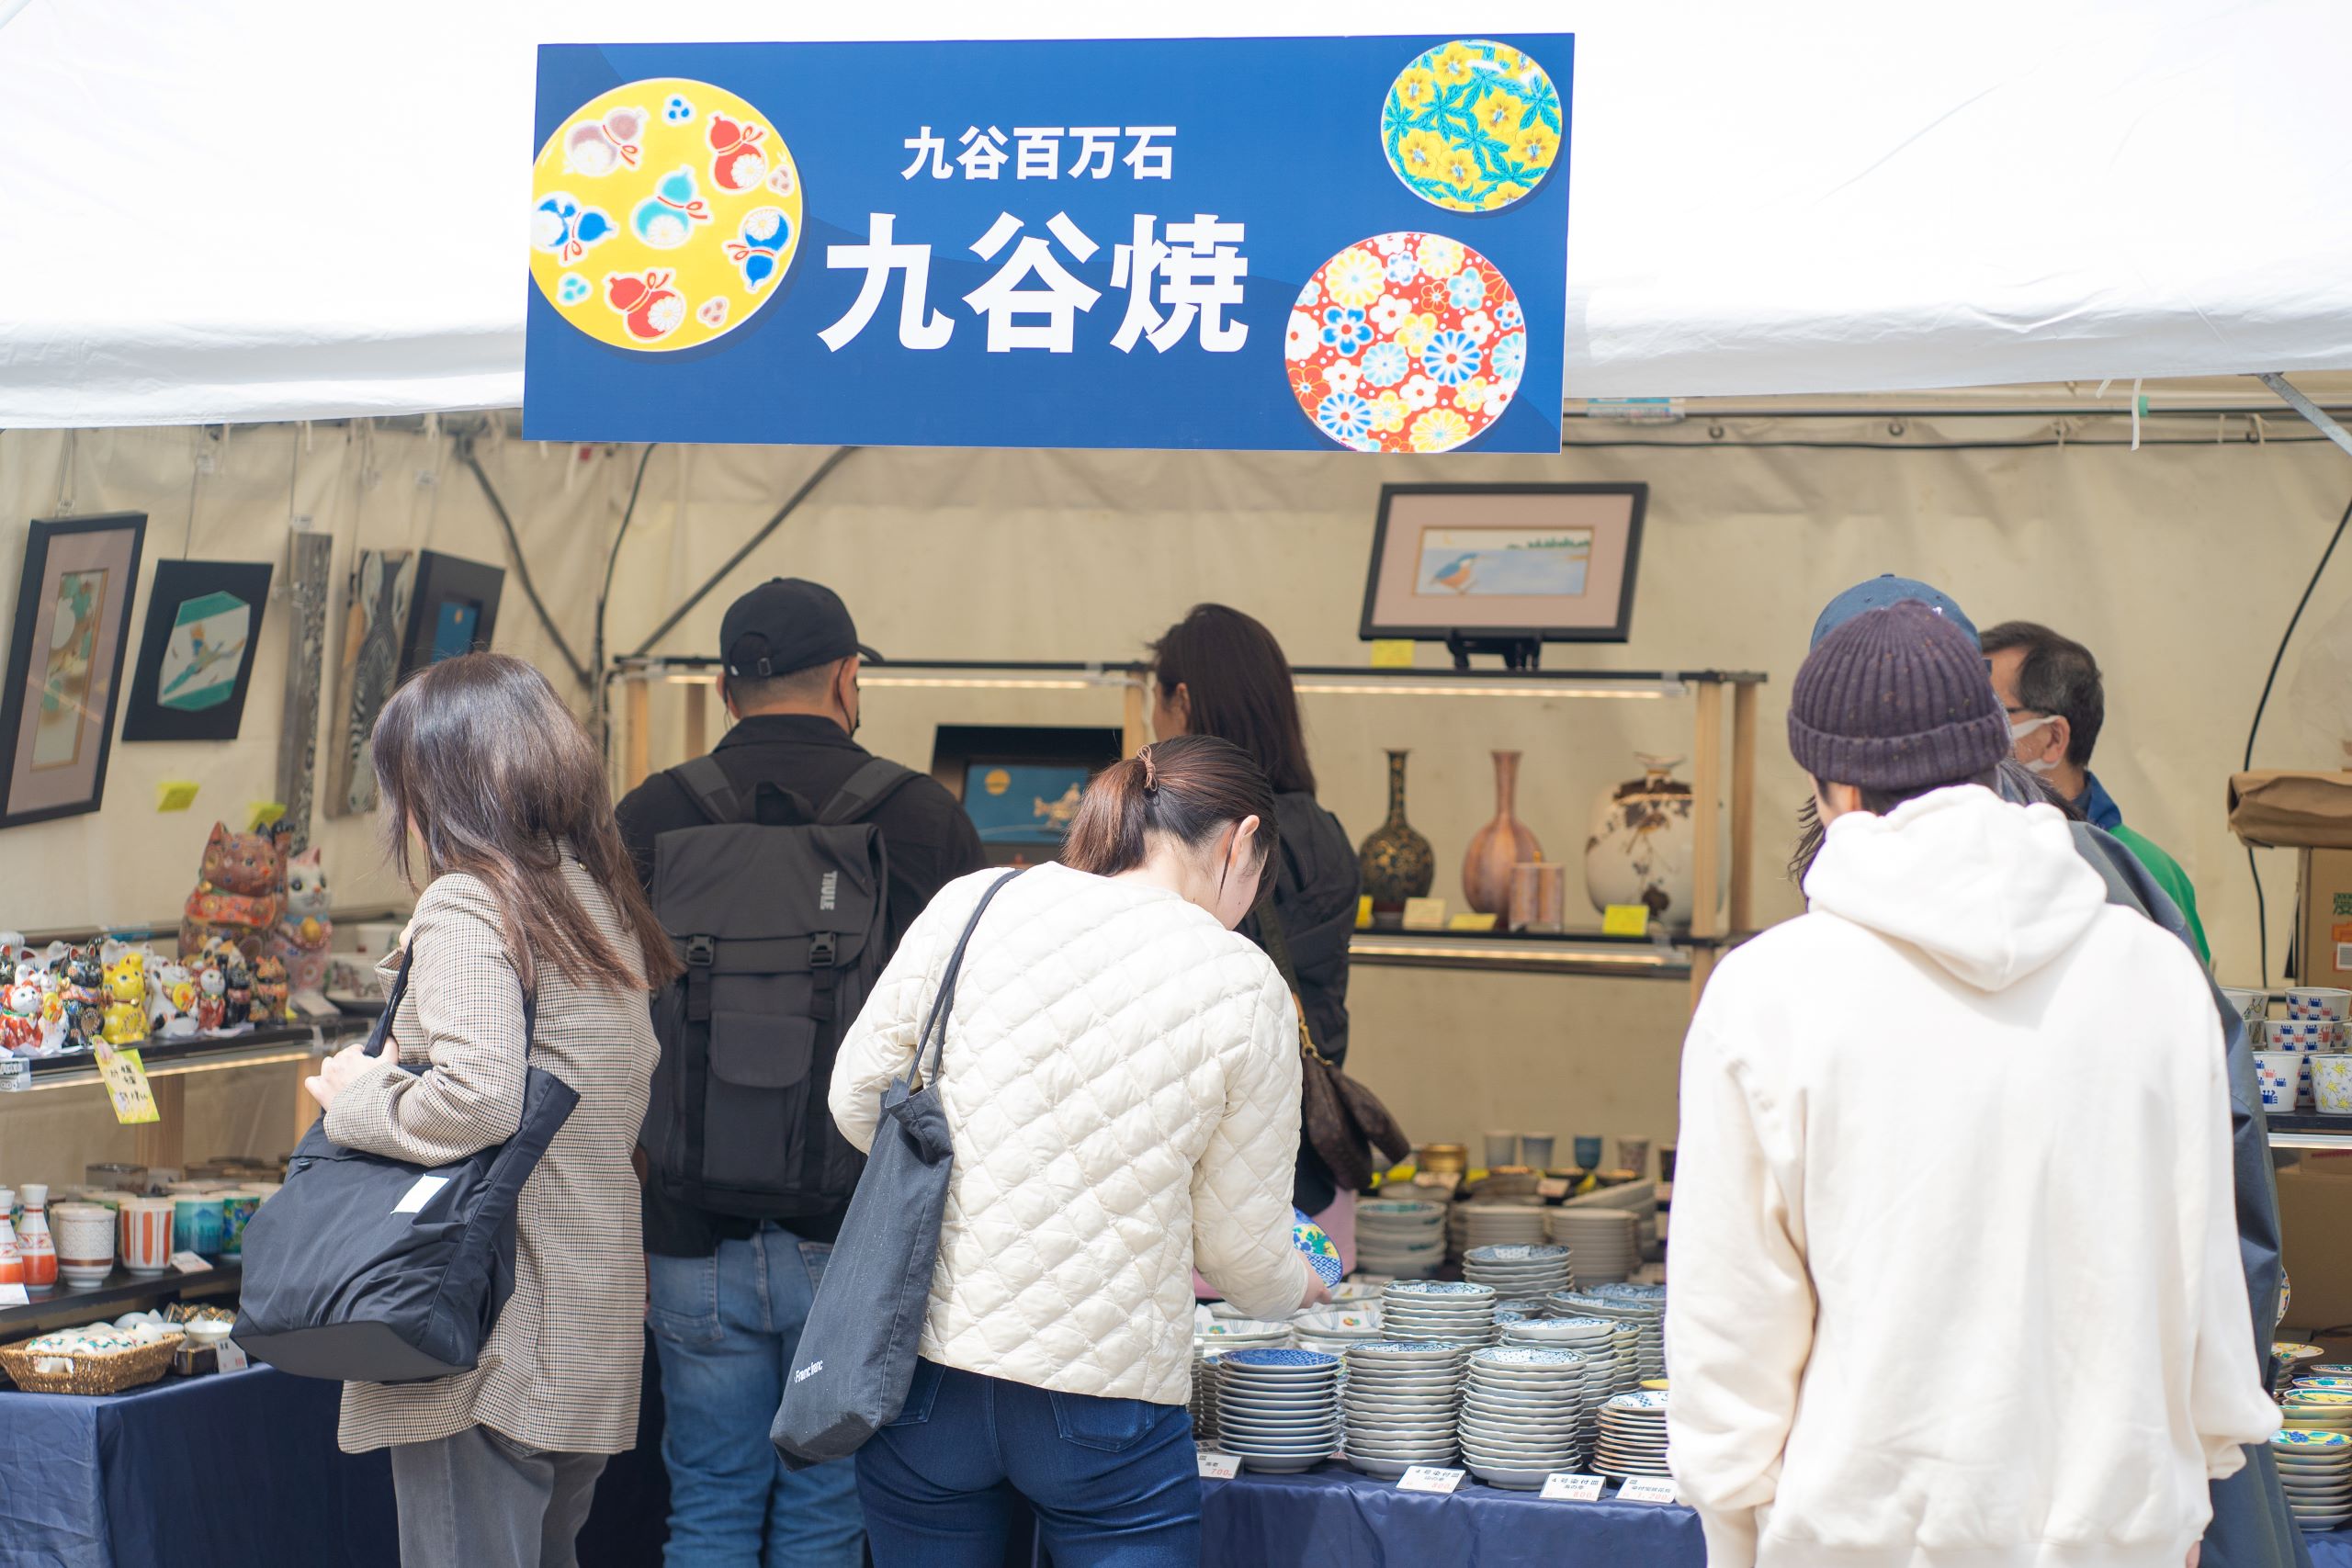 4月になんば広場で開催された「復興桜祭り」を通じて信和グループは石川県へ義援金3,274,532円を贈呈しました。のサブ画像8_久谷百万石 様